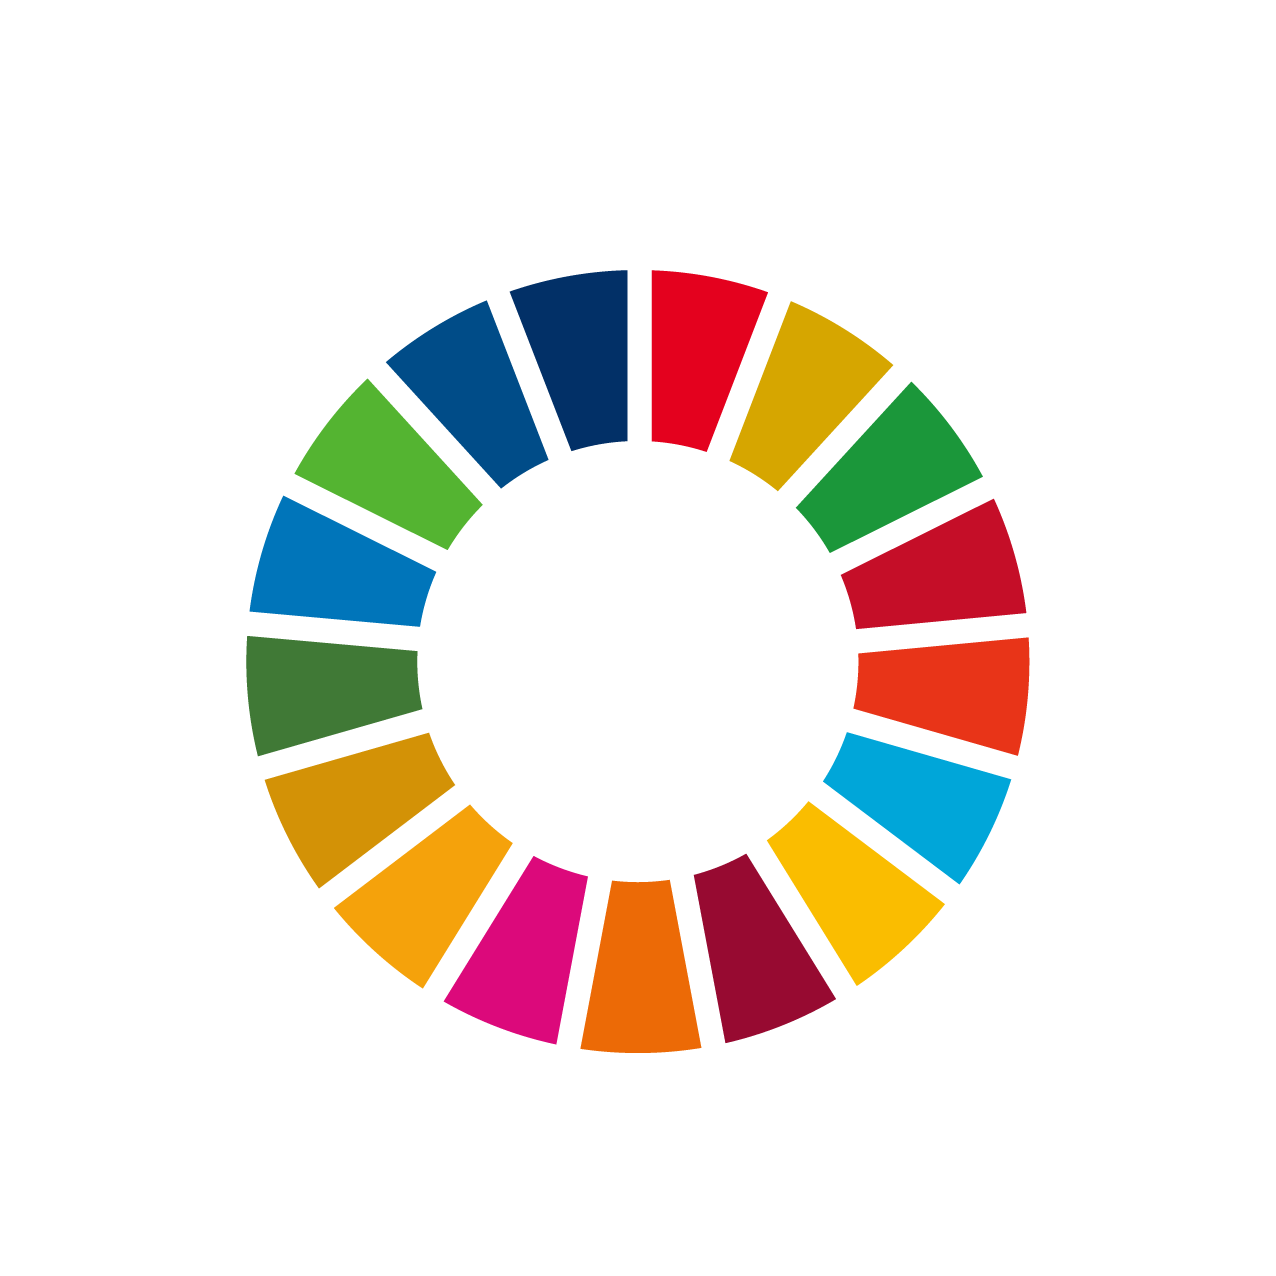 SDGs icon